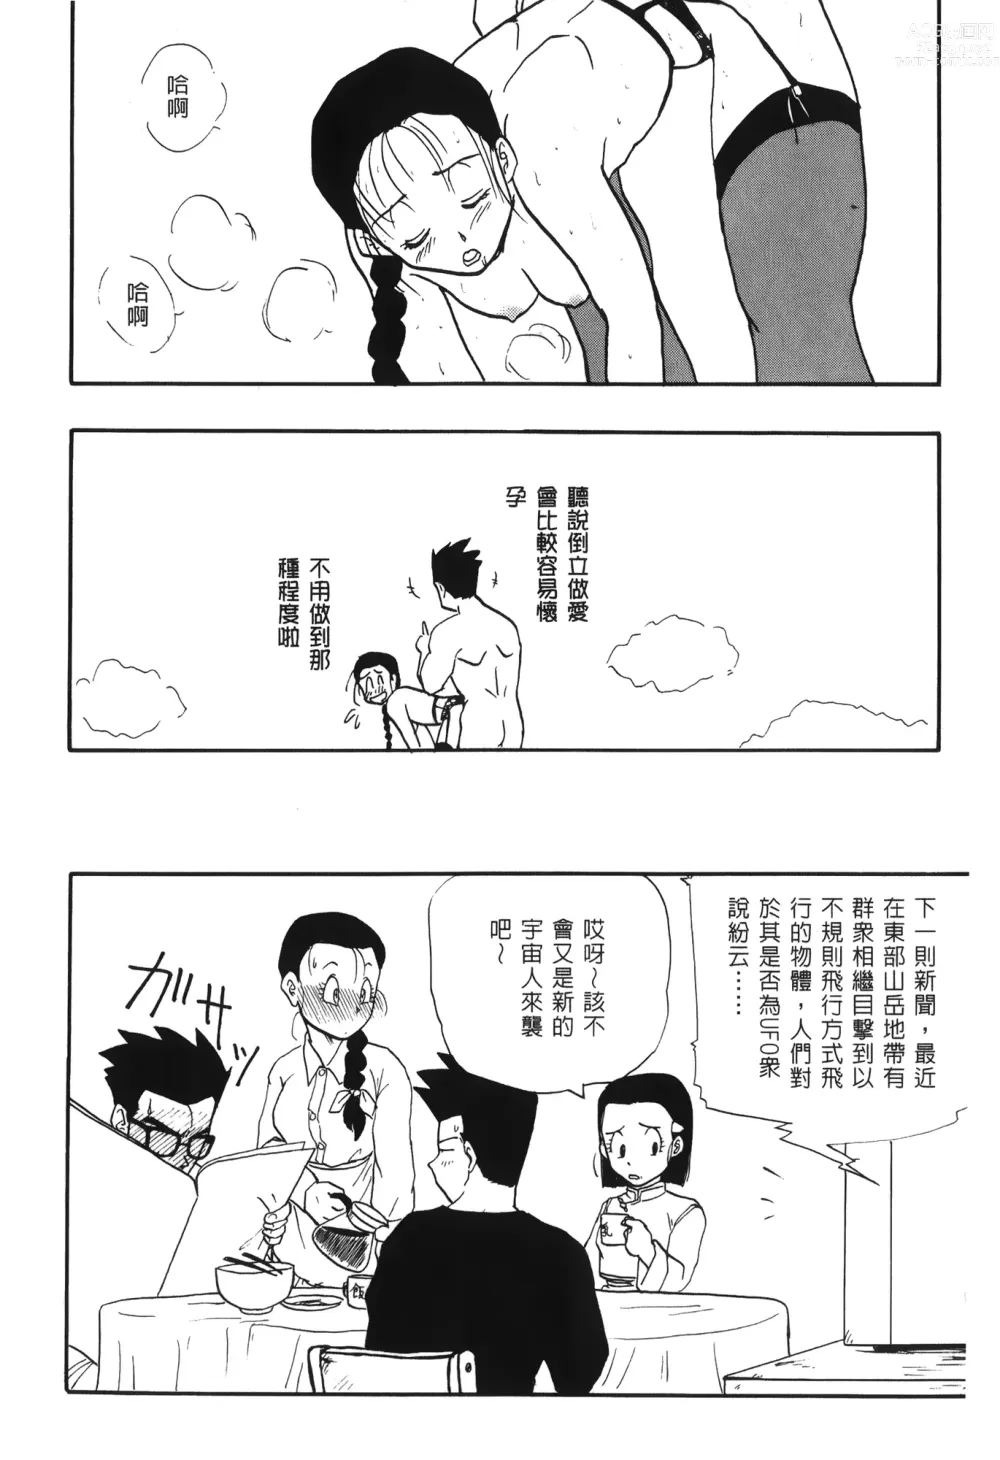 Page 160 of doujinshi ドラゴンパール 03